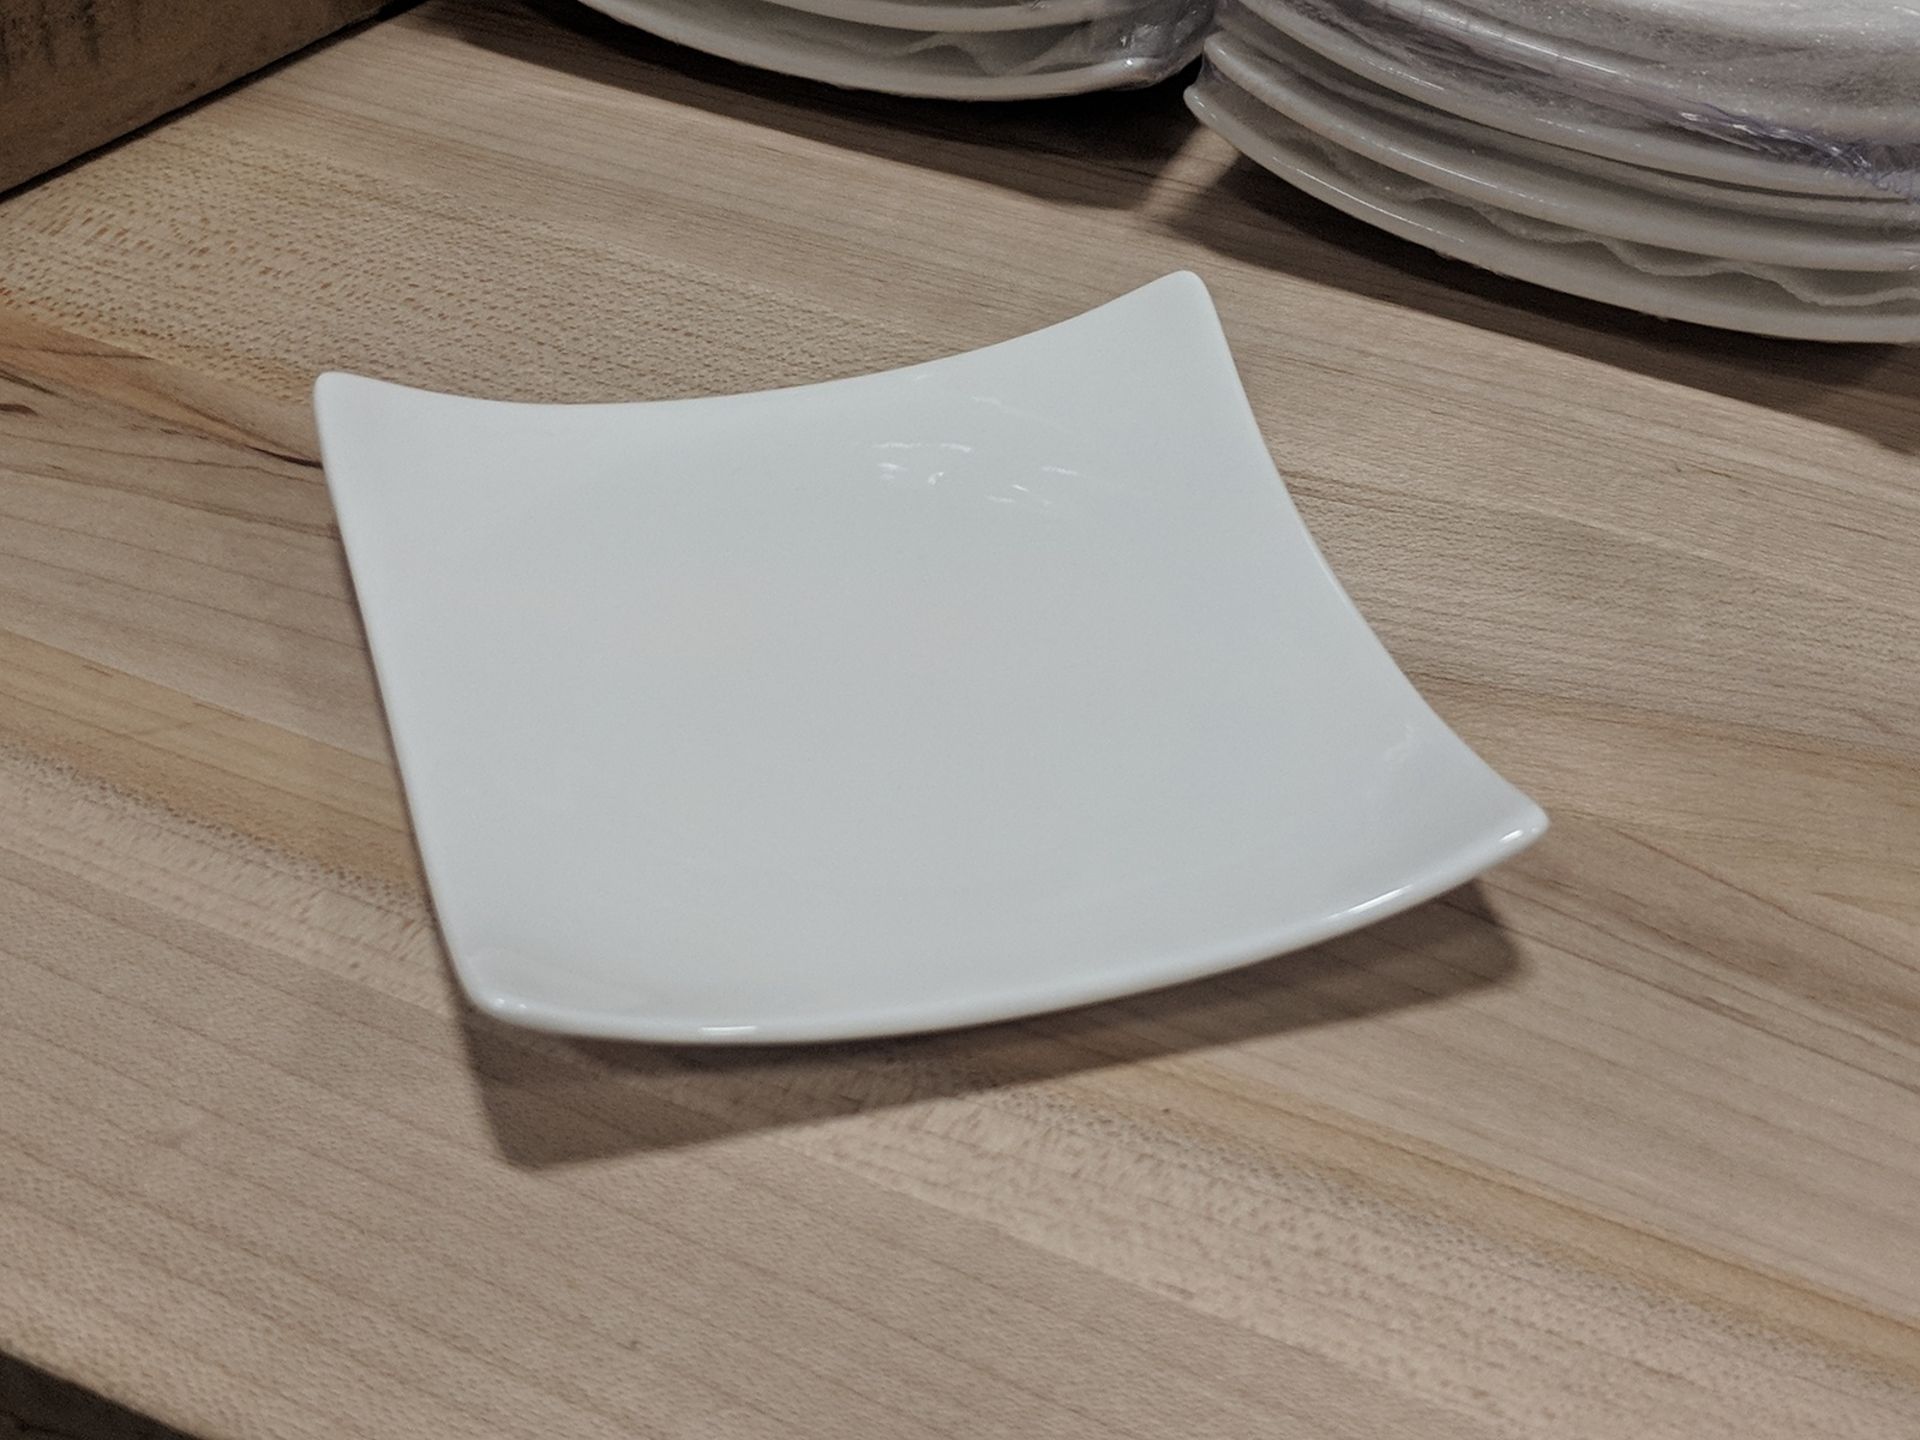 3-3/4" White Porcelain Square Appetizer Plates, Arcoroc R0737 - Lot of 24 (1 Case)